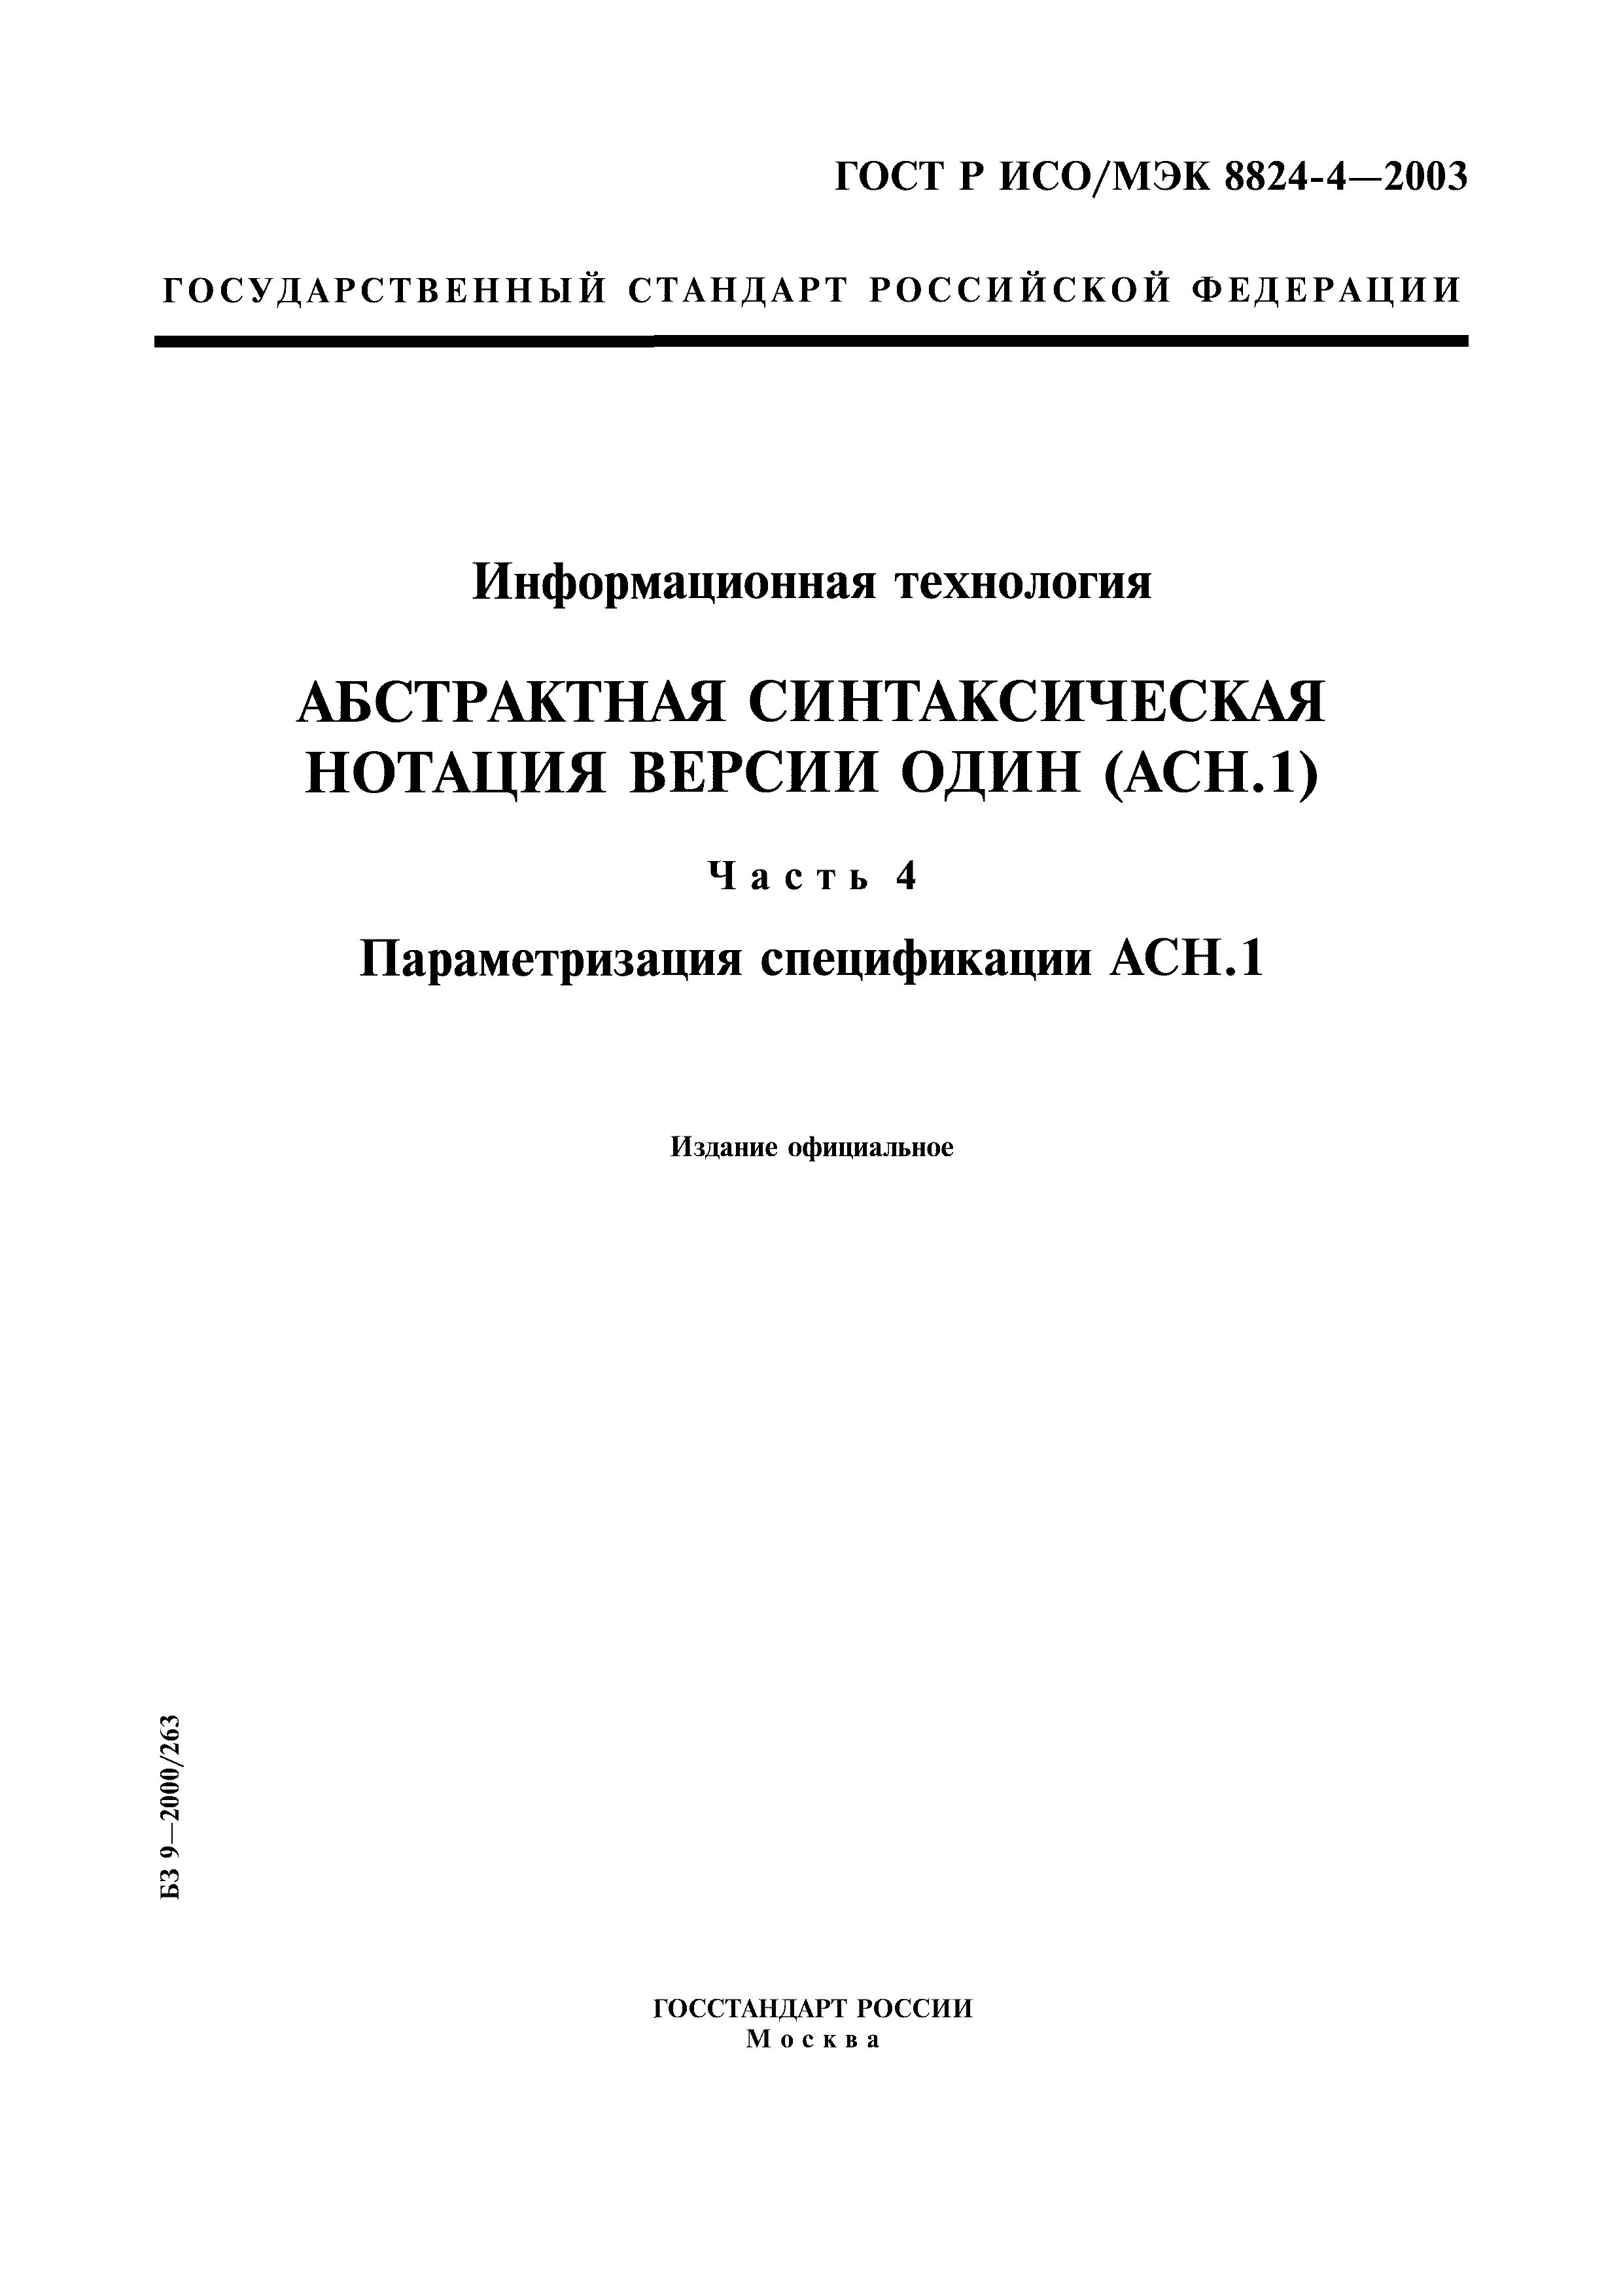 ГОСТ Р ИСО/МЭК 8824-4-2003